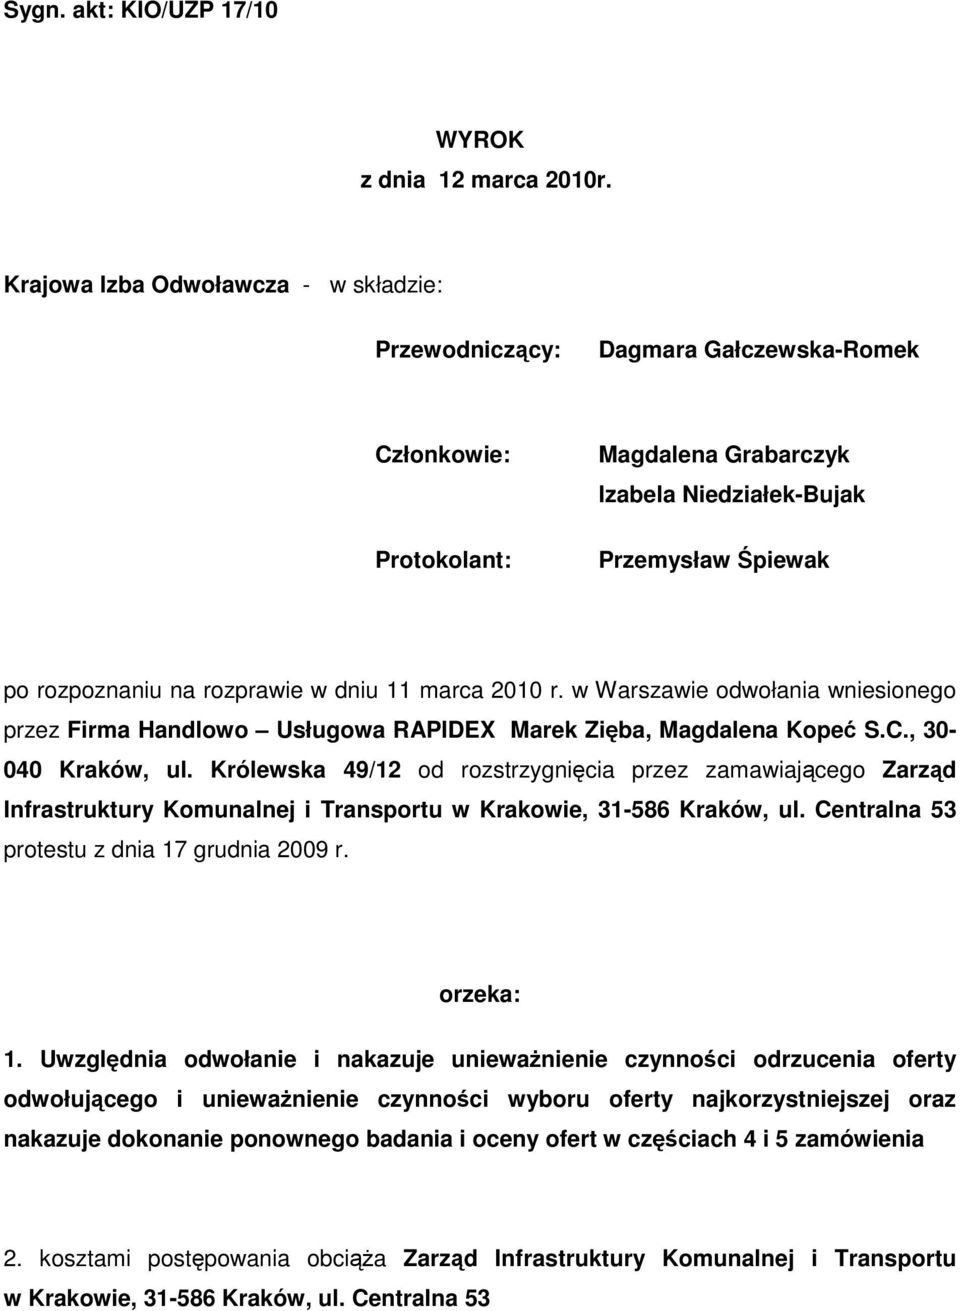 dniu 11 marca 2010 r. w Warszawie odwołania wniesionego przez Firma Handlowo Usługowa RAPIDEX Marek Zięba, Magdalena Kopeć S.C., 30-040 Kraków, ul.